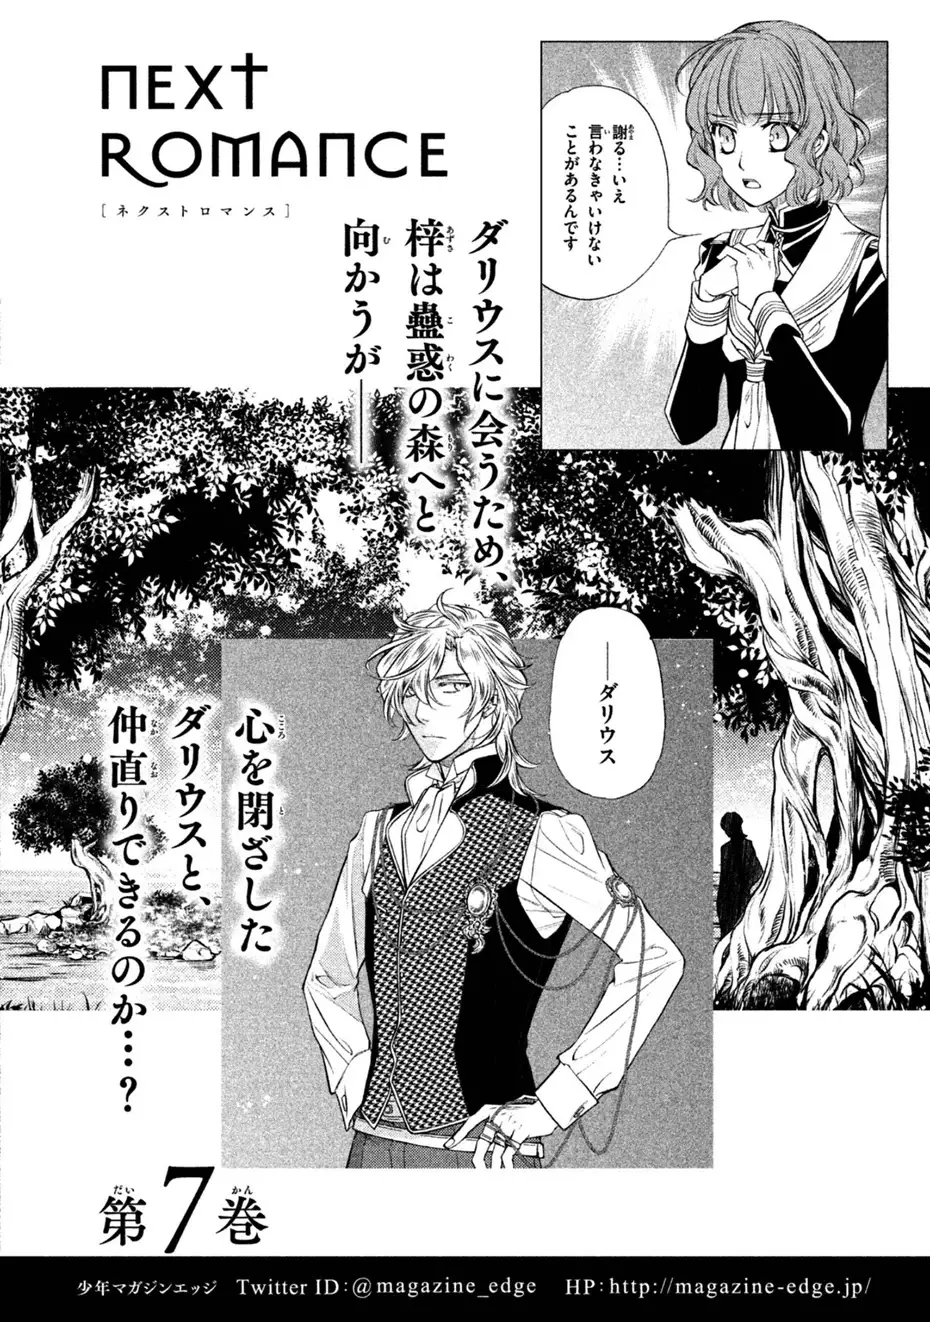 Harukanaru Jikuu No Naka De 6 - 30 page 45-65b77061